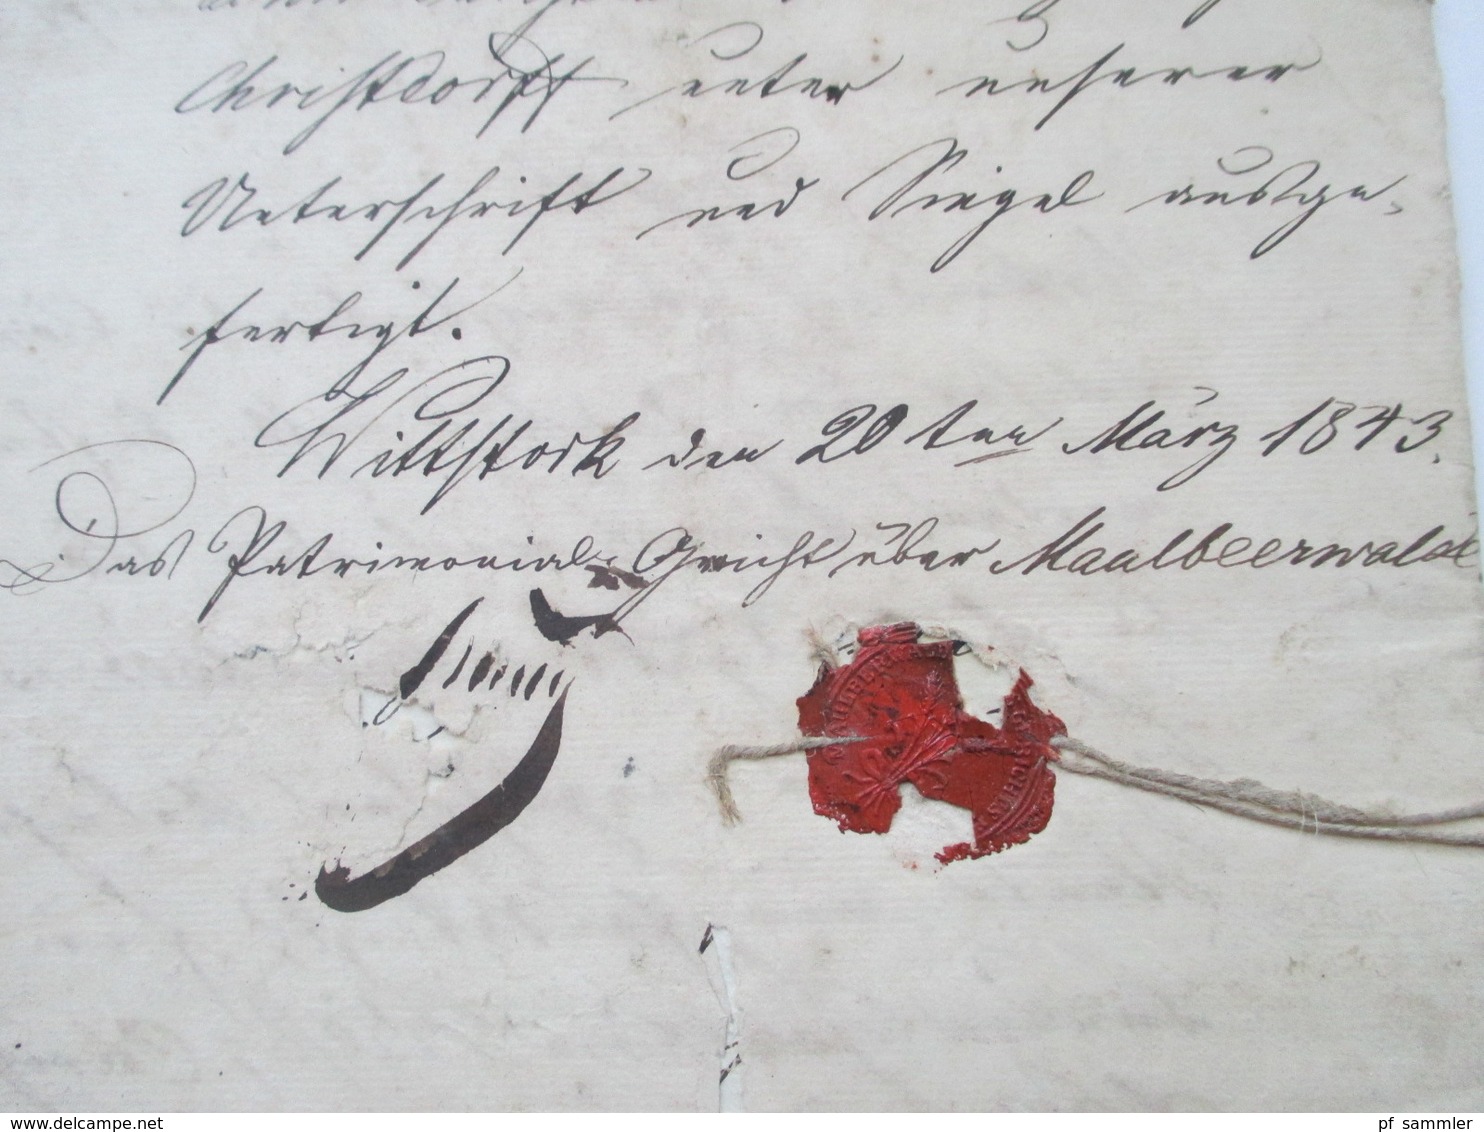 Dokument 1843 Preussischer Hypothekenbrief mit Stempelmarke Ein Halber Thaler 15 Gr. und Prägung